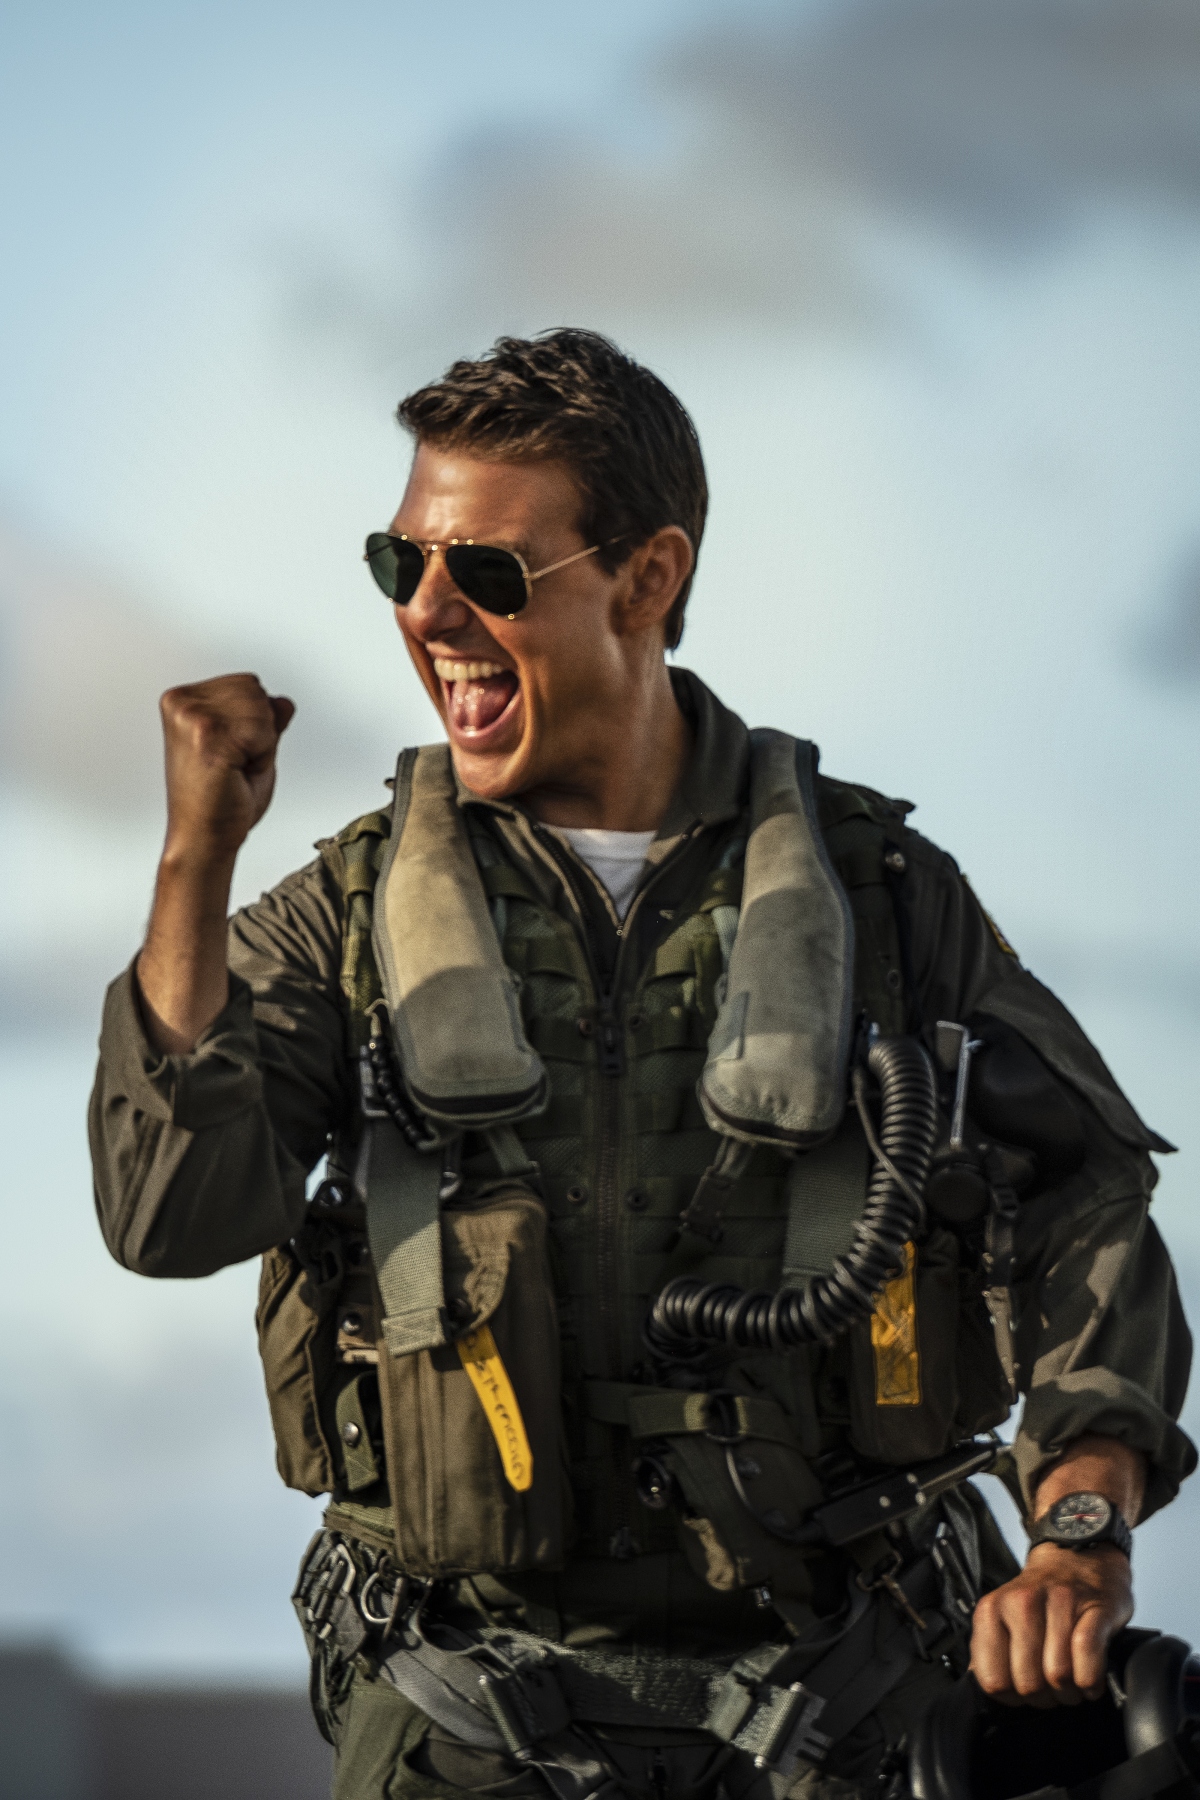 Top Gun: Maverick - Bom tấn hành động đỉnh cao, không thể bỏ lỡ của Tom Cruise